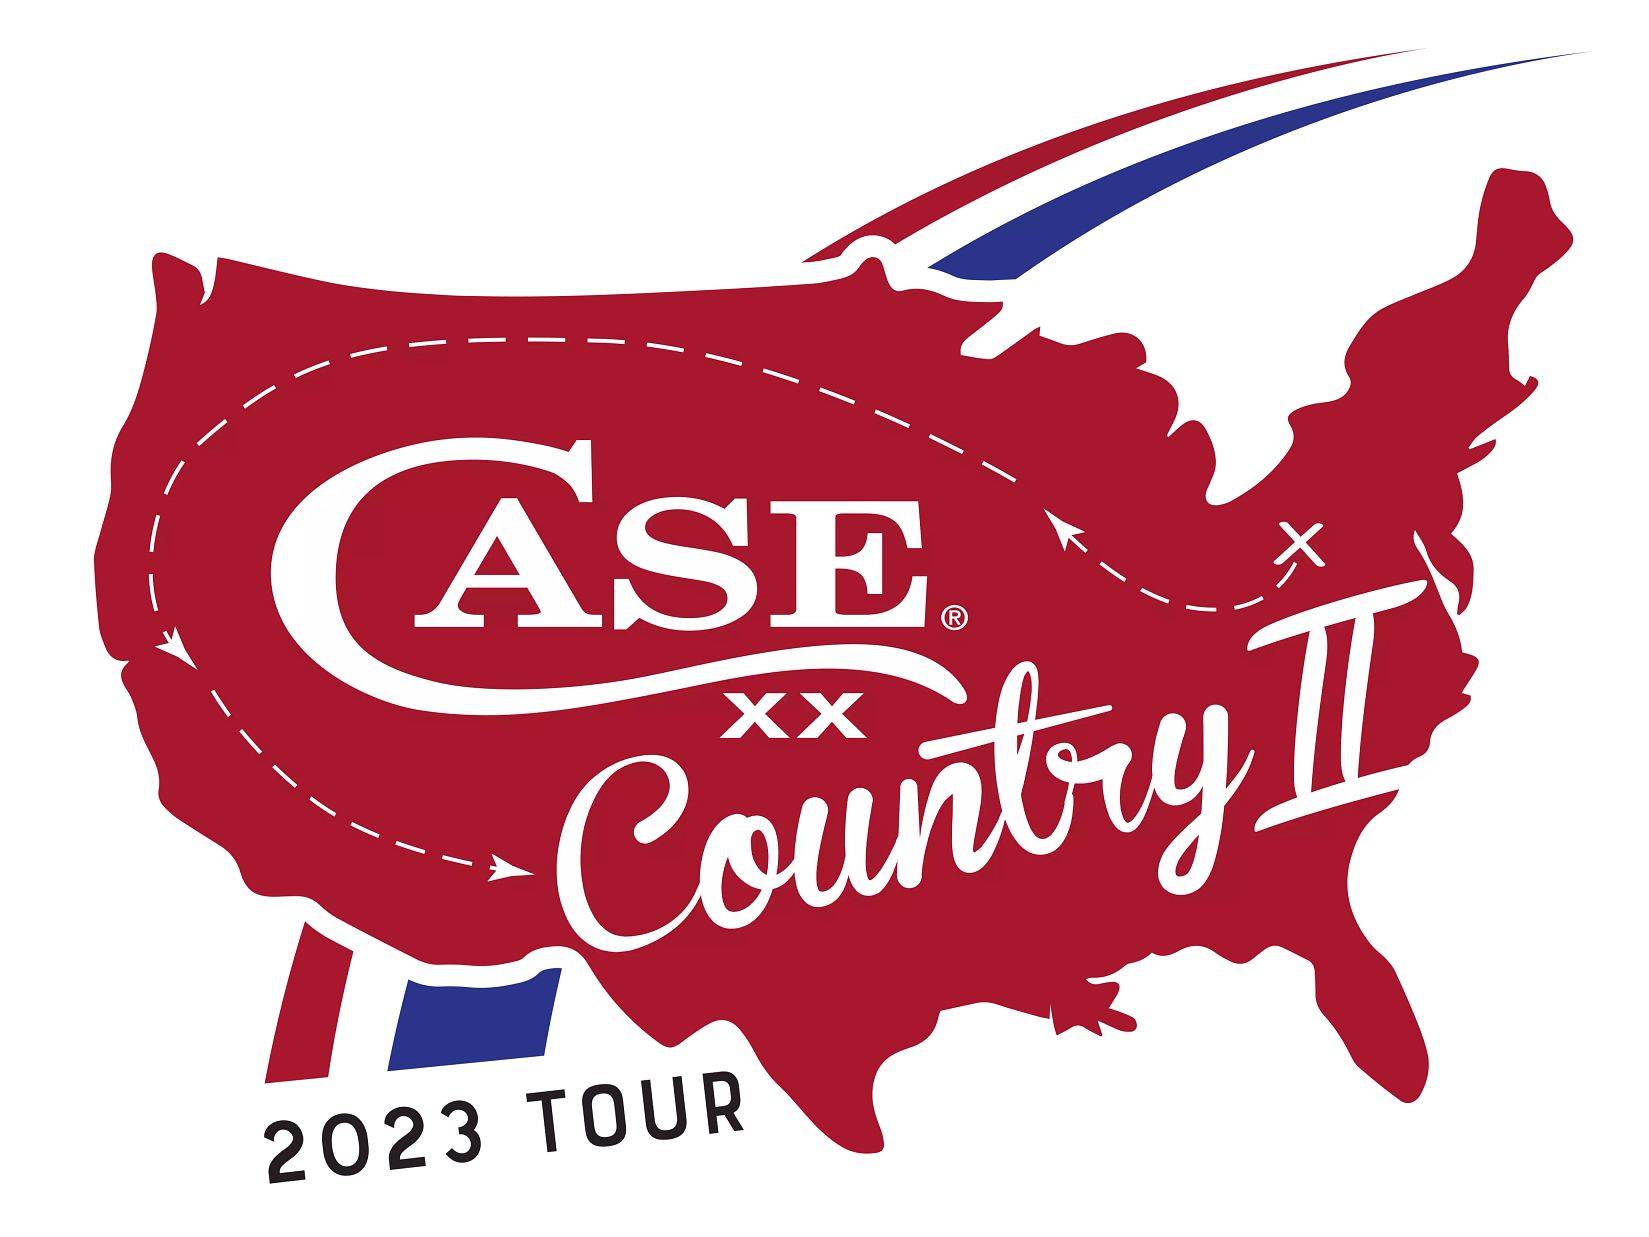 Case XX Country II - 2023 Tour